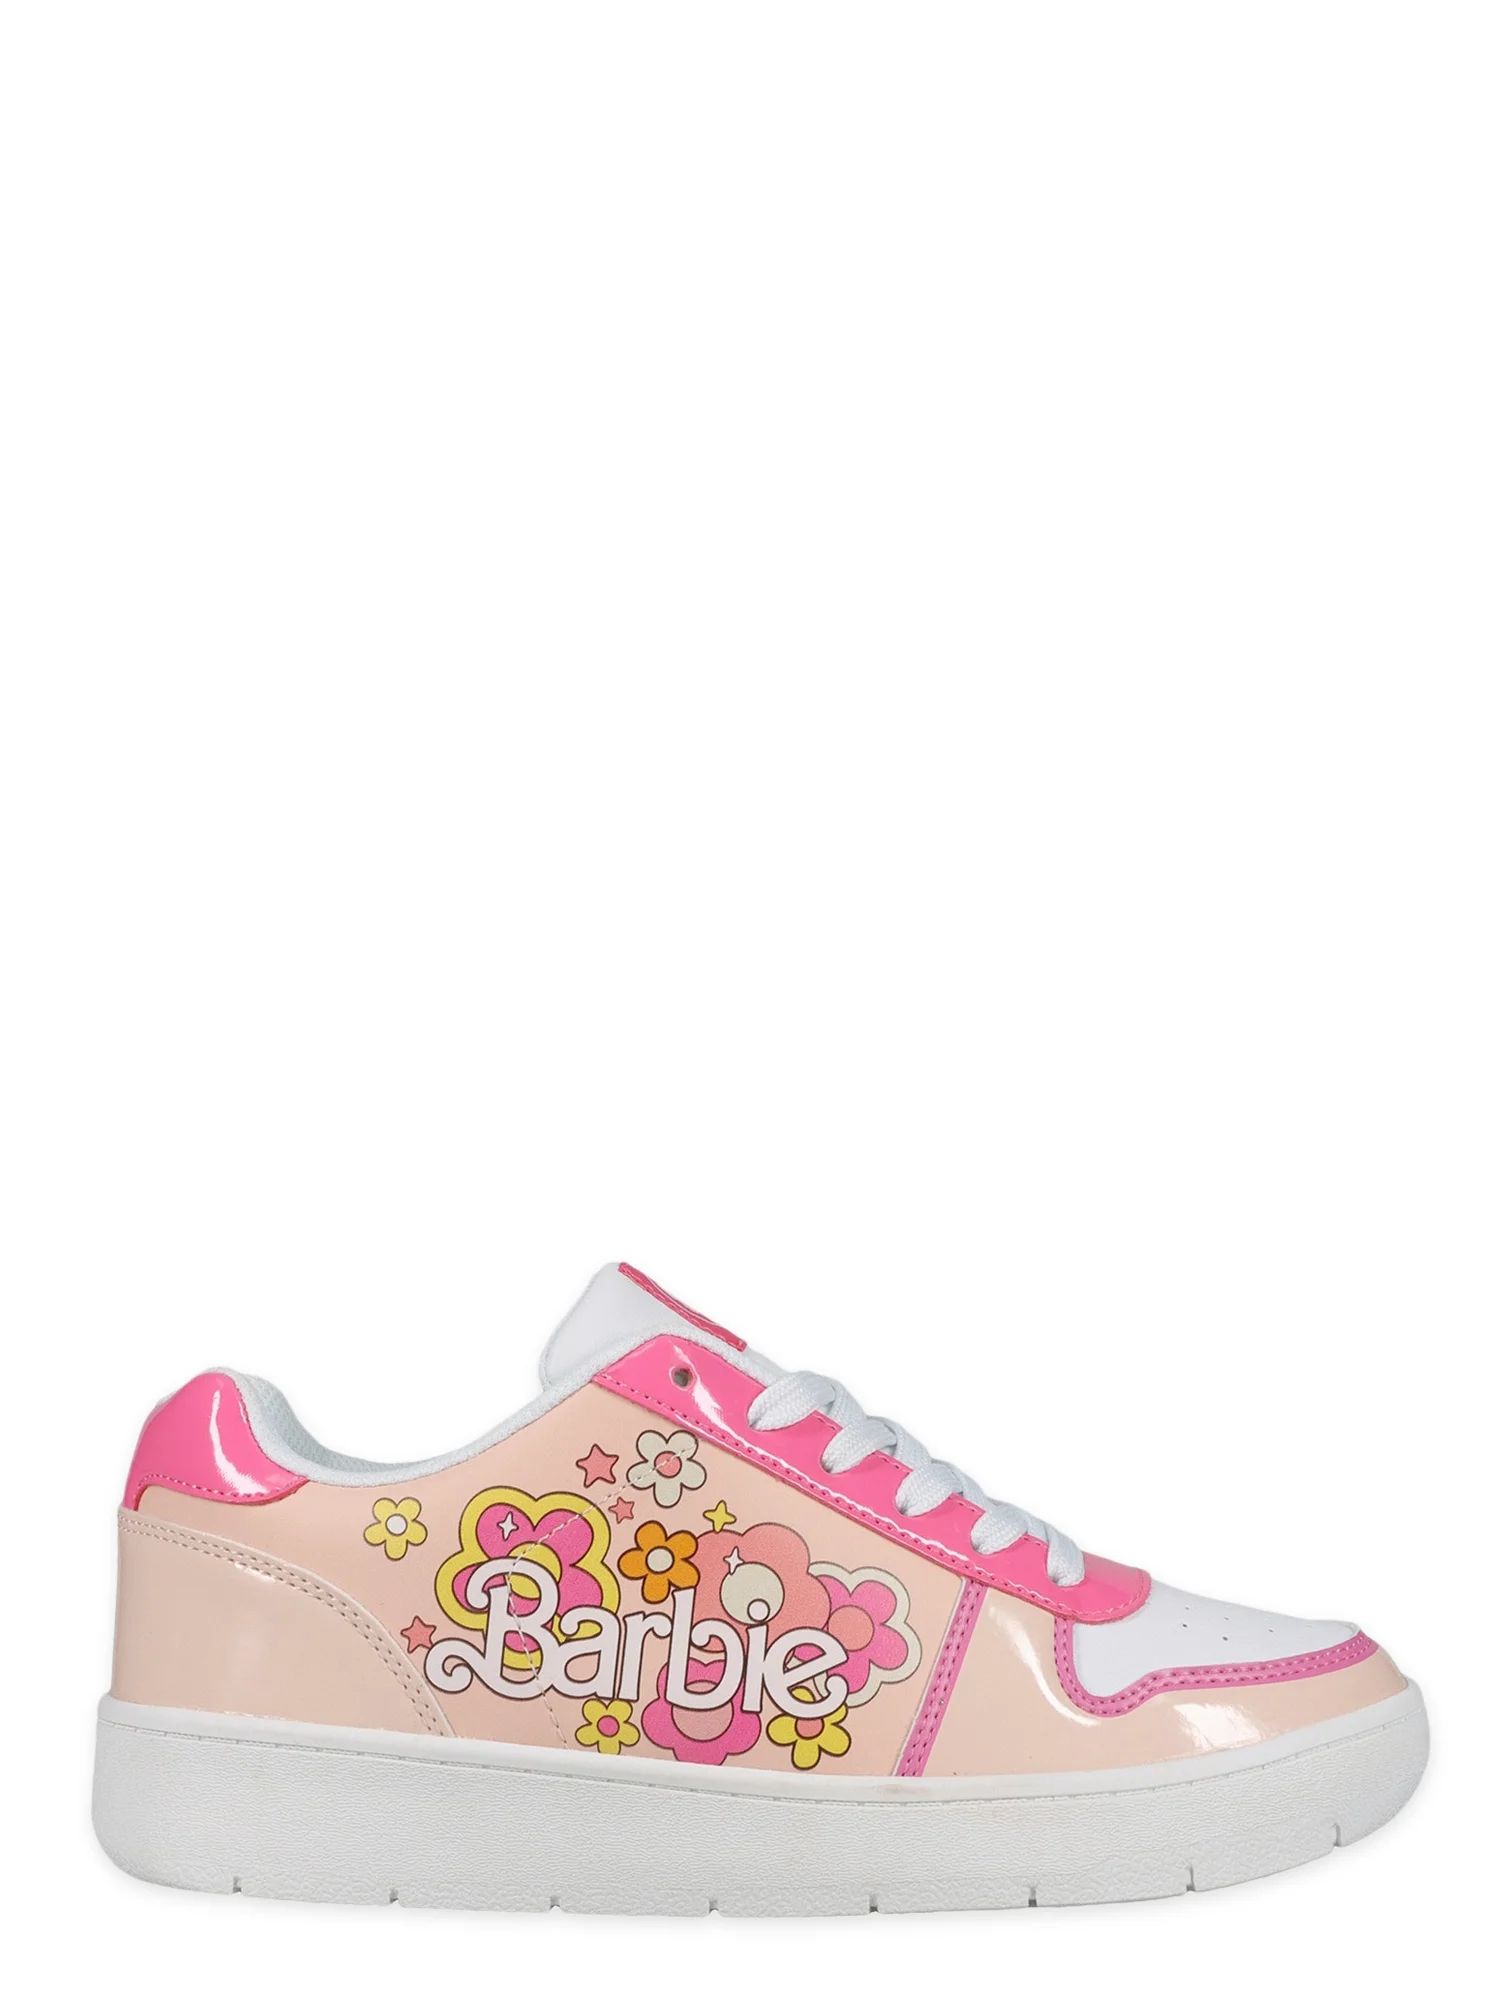 Women's Barbie by Mattel Pink Casual Court Sneaker, Whole Sizes 6-11, Regular Width - Walmart.com | Walmart (US)